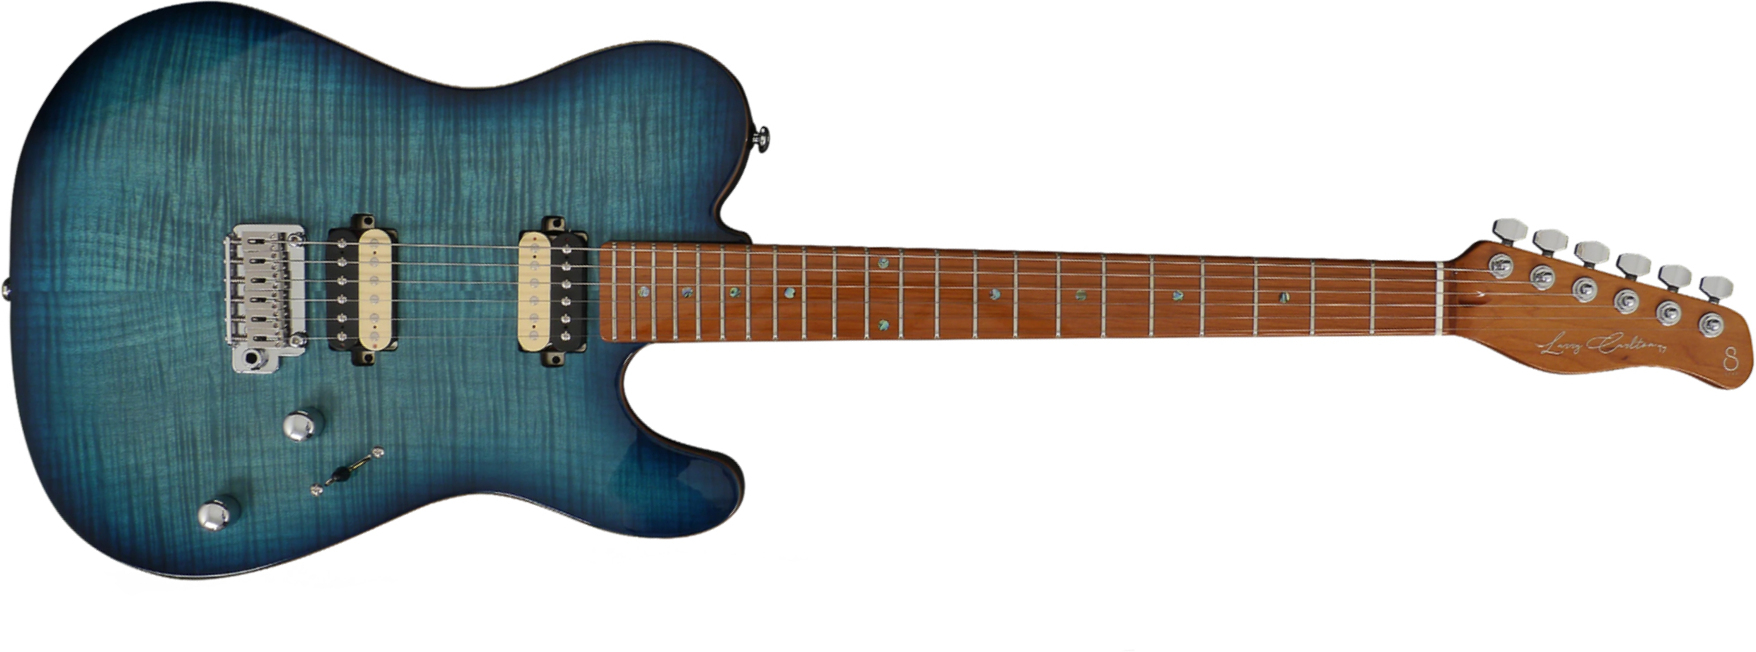 Sire Larry Carlton T7 Fm Hh Trem Mn - Trans Blue - Guitarra eléctrica con forma de tel - Main picture